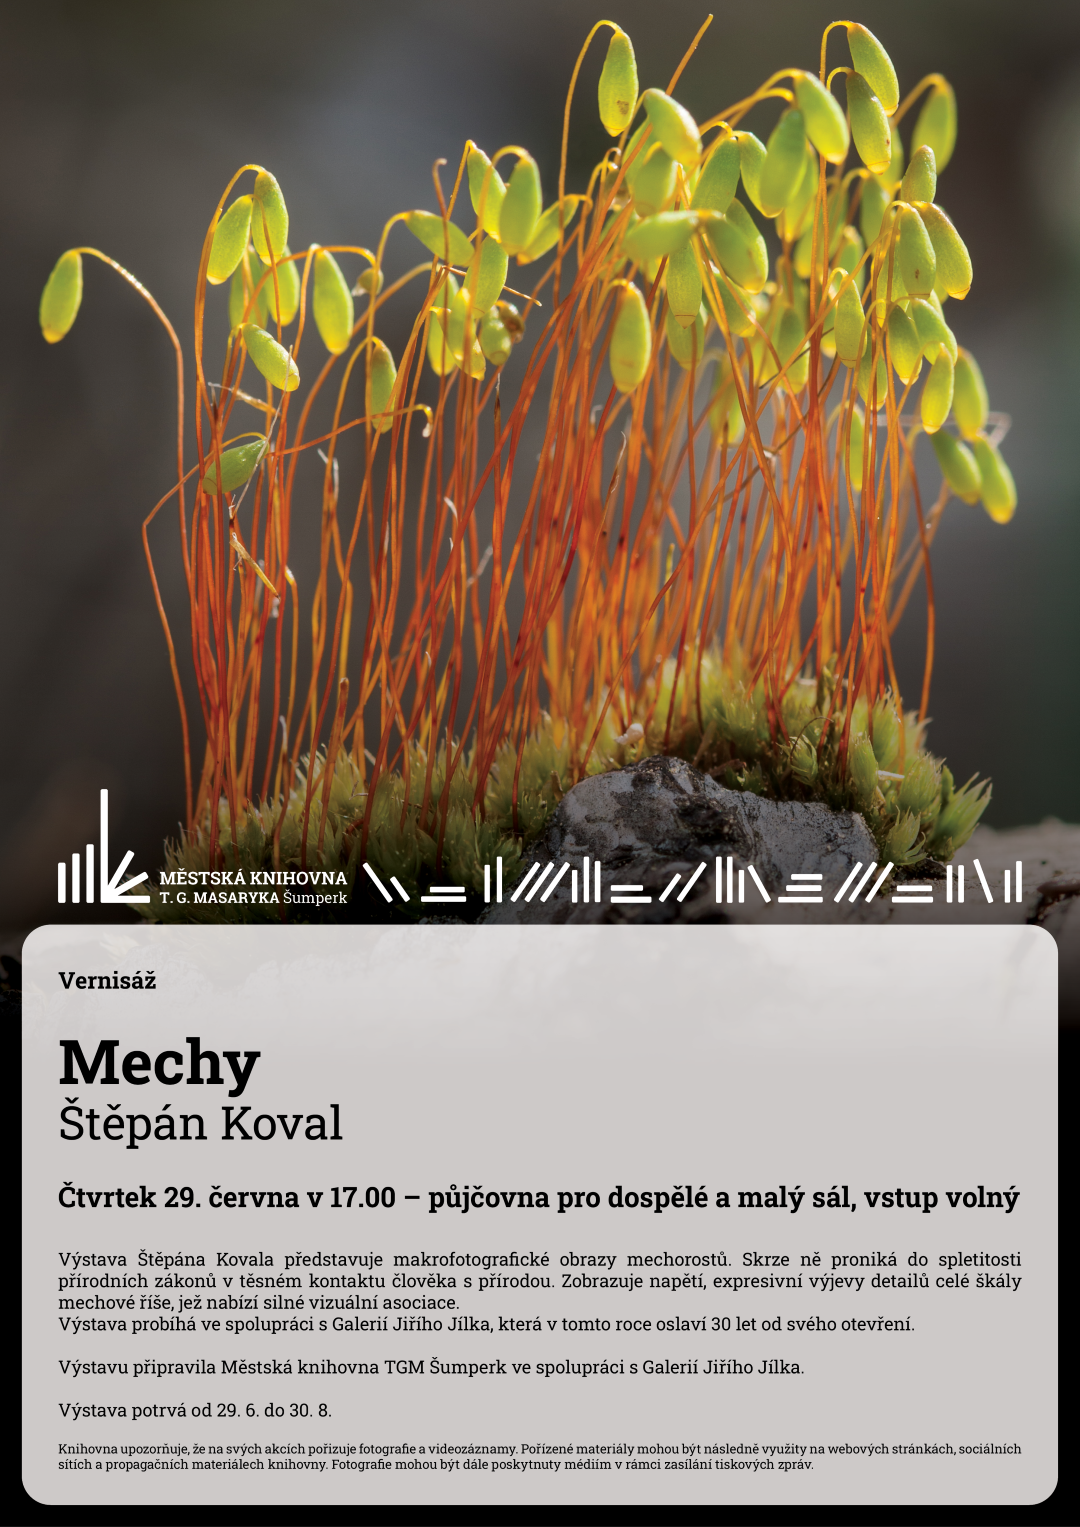 Plakát pro vernisáž Mechy od Štěpána Kovala